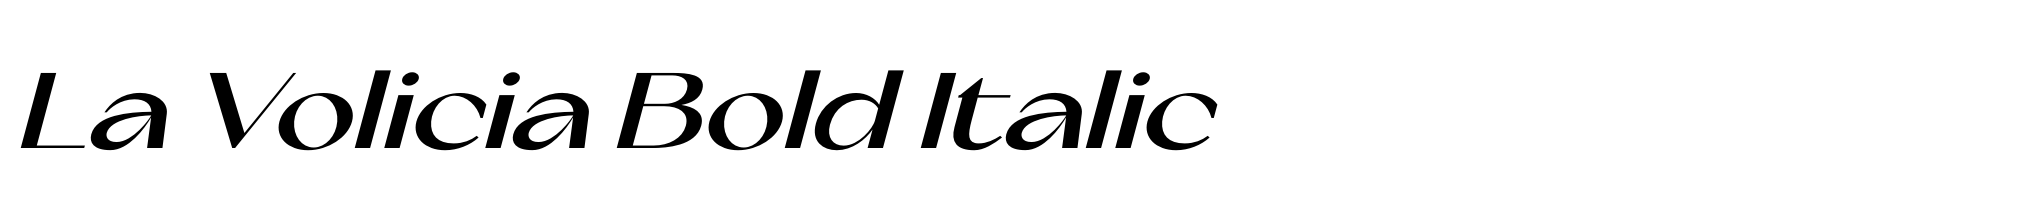 La Volicia Bold Italic image